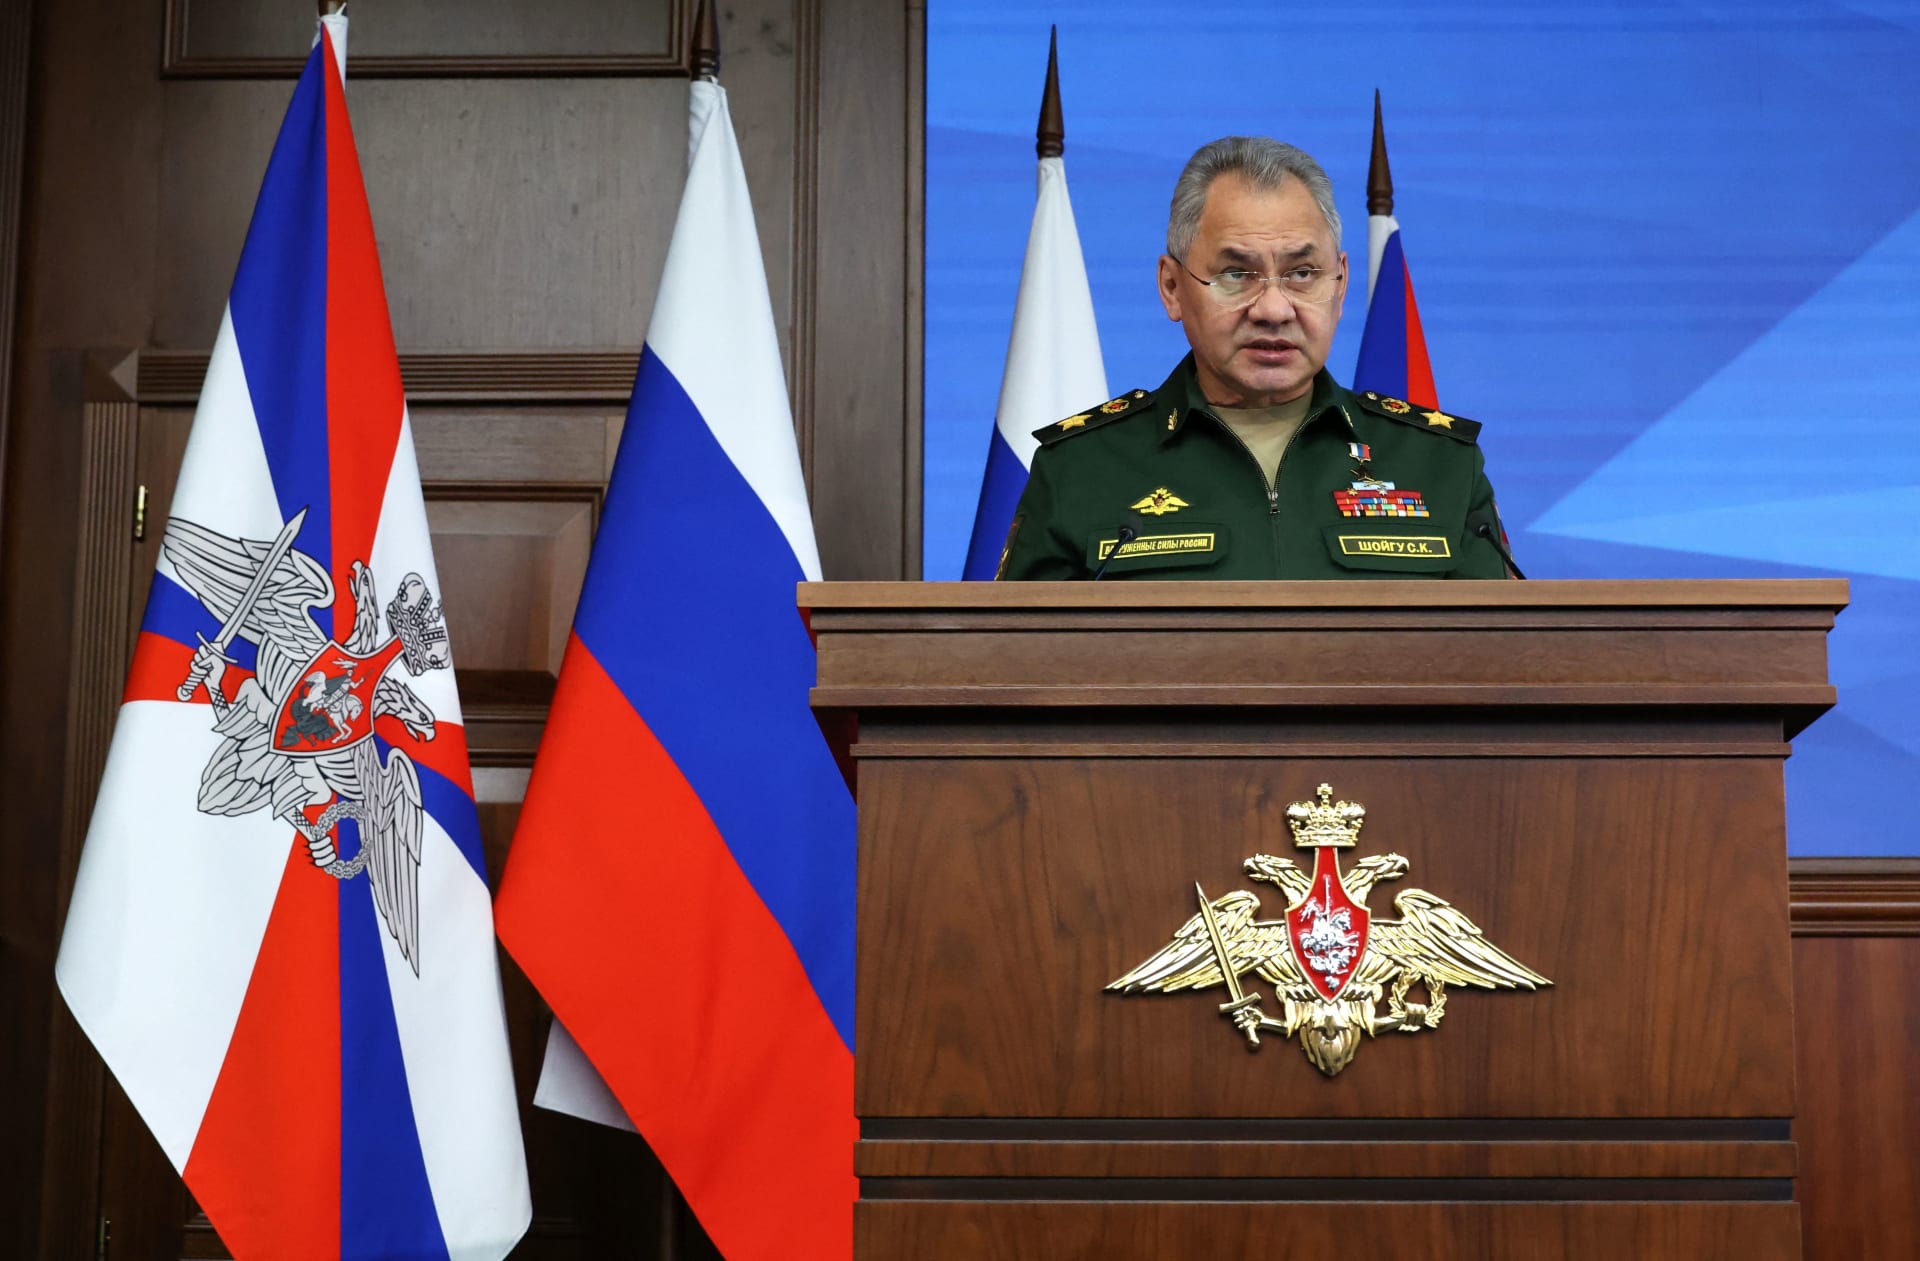 جنرال روسي في جبهة أوكرانيا أقيل من منصبه يتهم وزير الدفاع بـ"الخيانة"